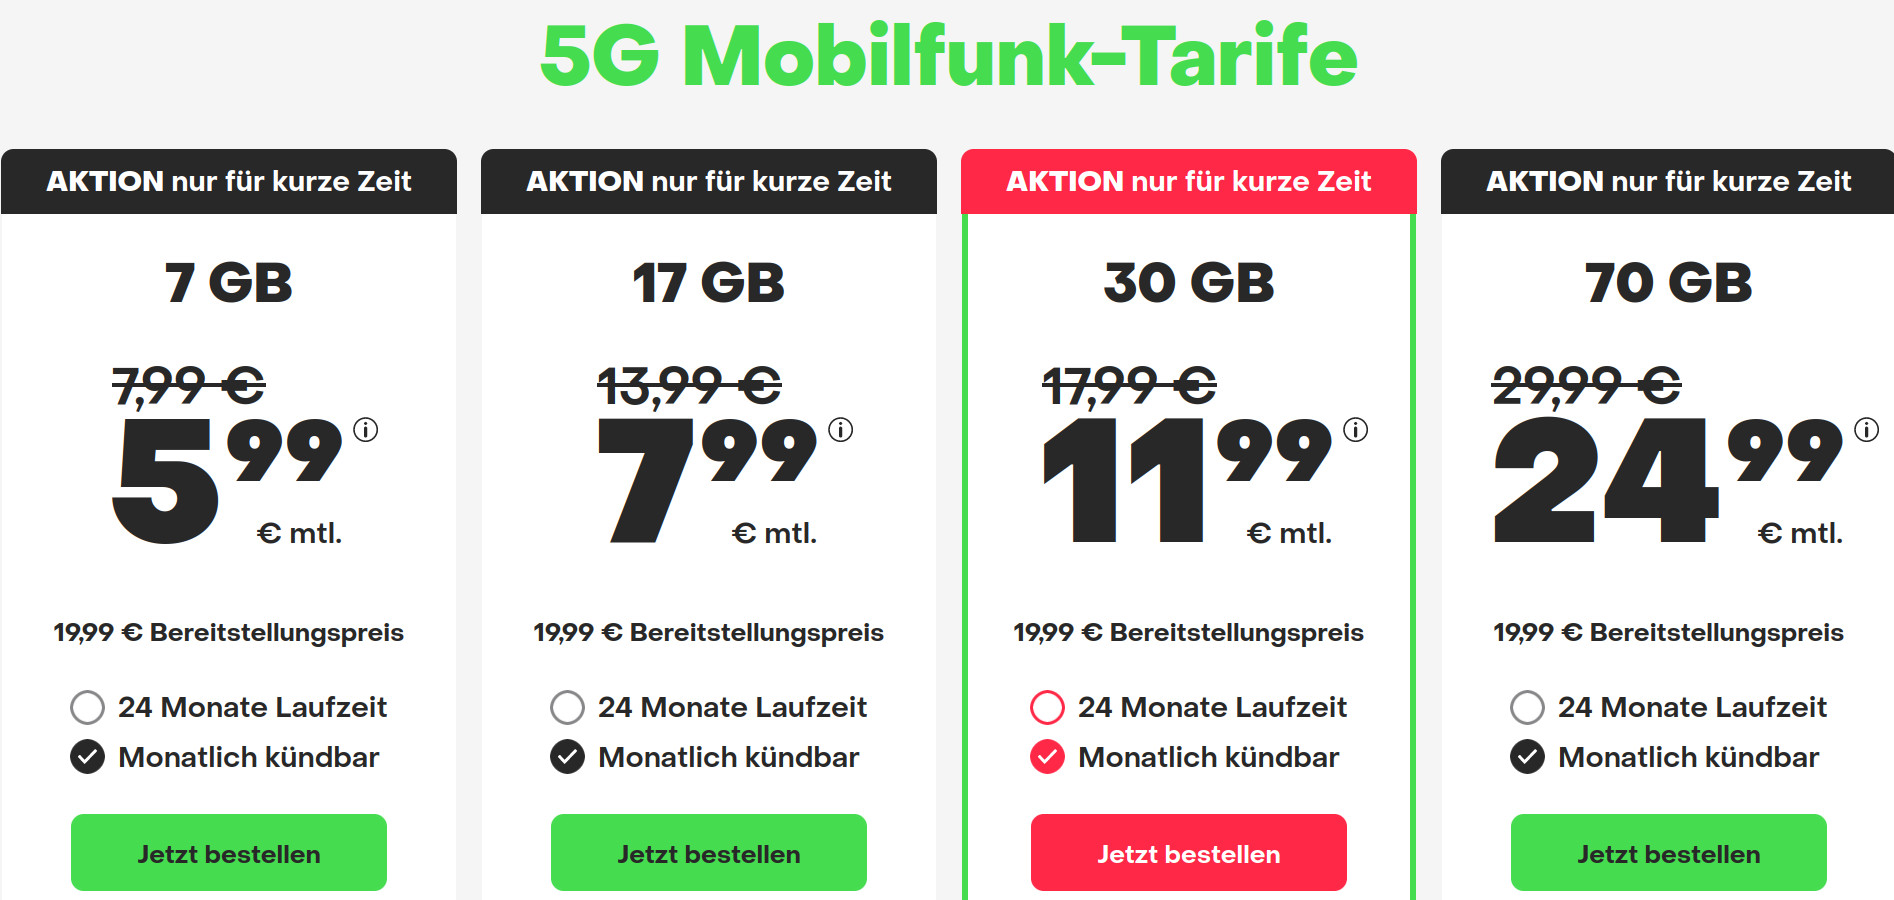 Preistipp 17 GB Handytarife: 17 GB 5G All-In-Flat für 7,99 Euro mit mtl. Laufzeit